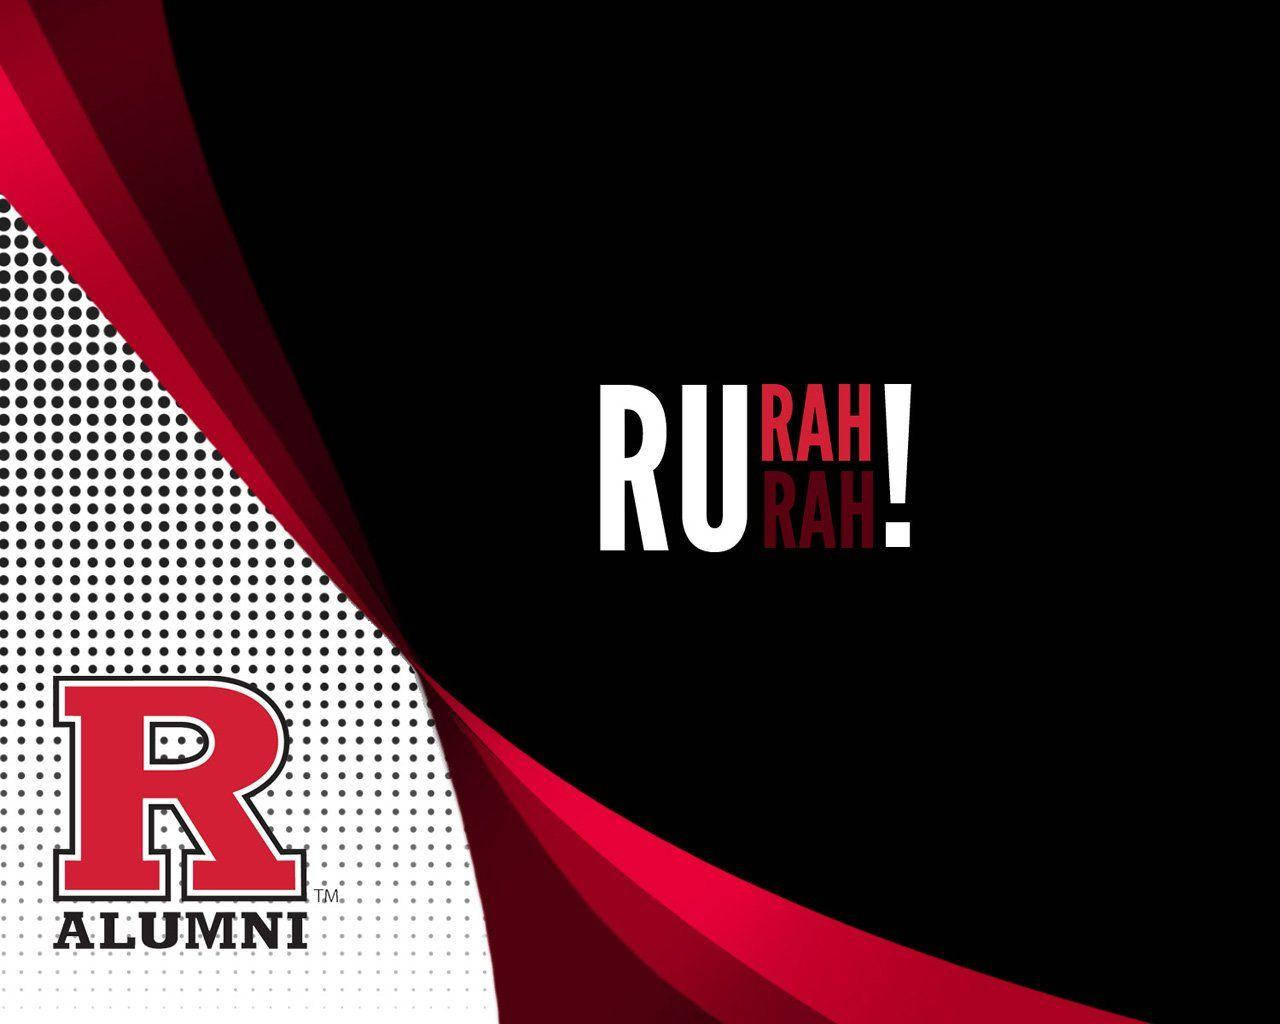 Tapet med Rutgers Sports Teams Logo: Fremhæv det berømte Rutgers sportsholds logo ved at have det på din computer eller mobil. Wallpaper